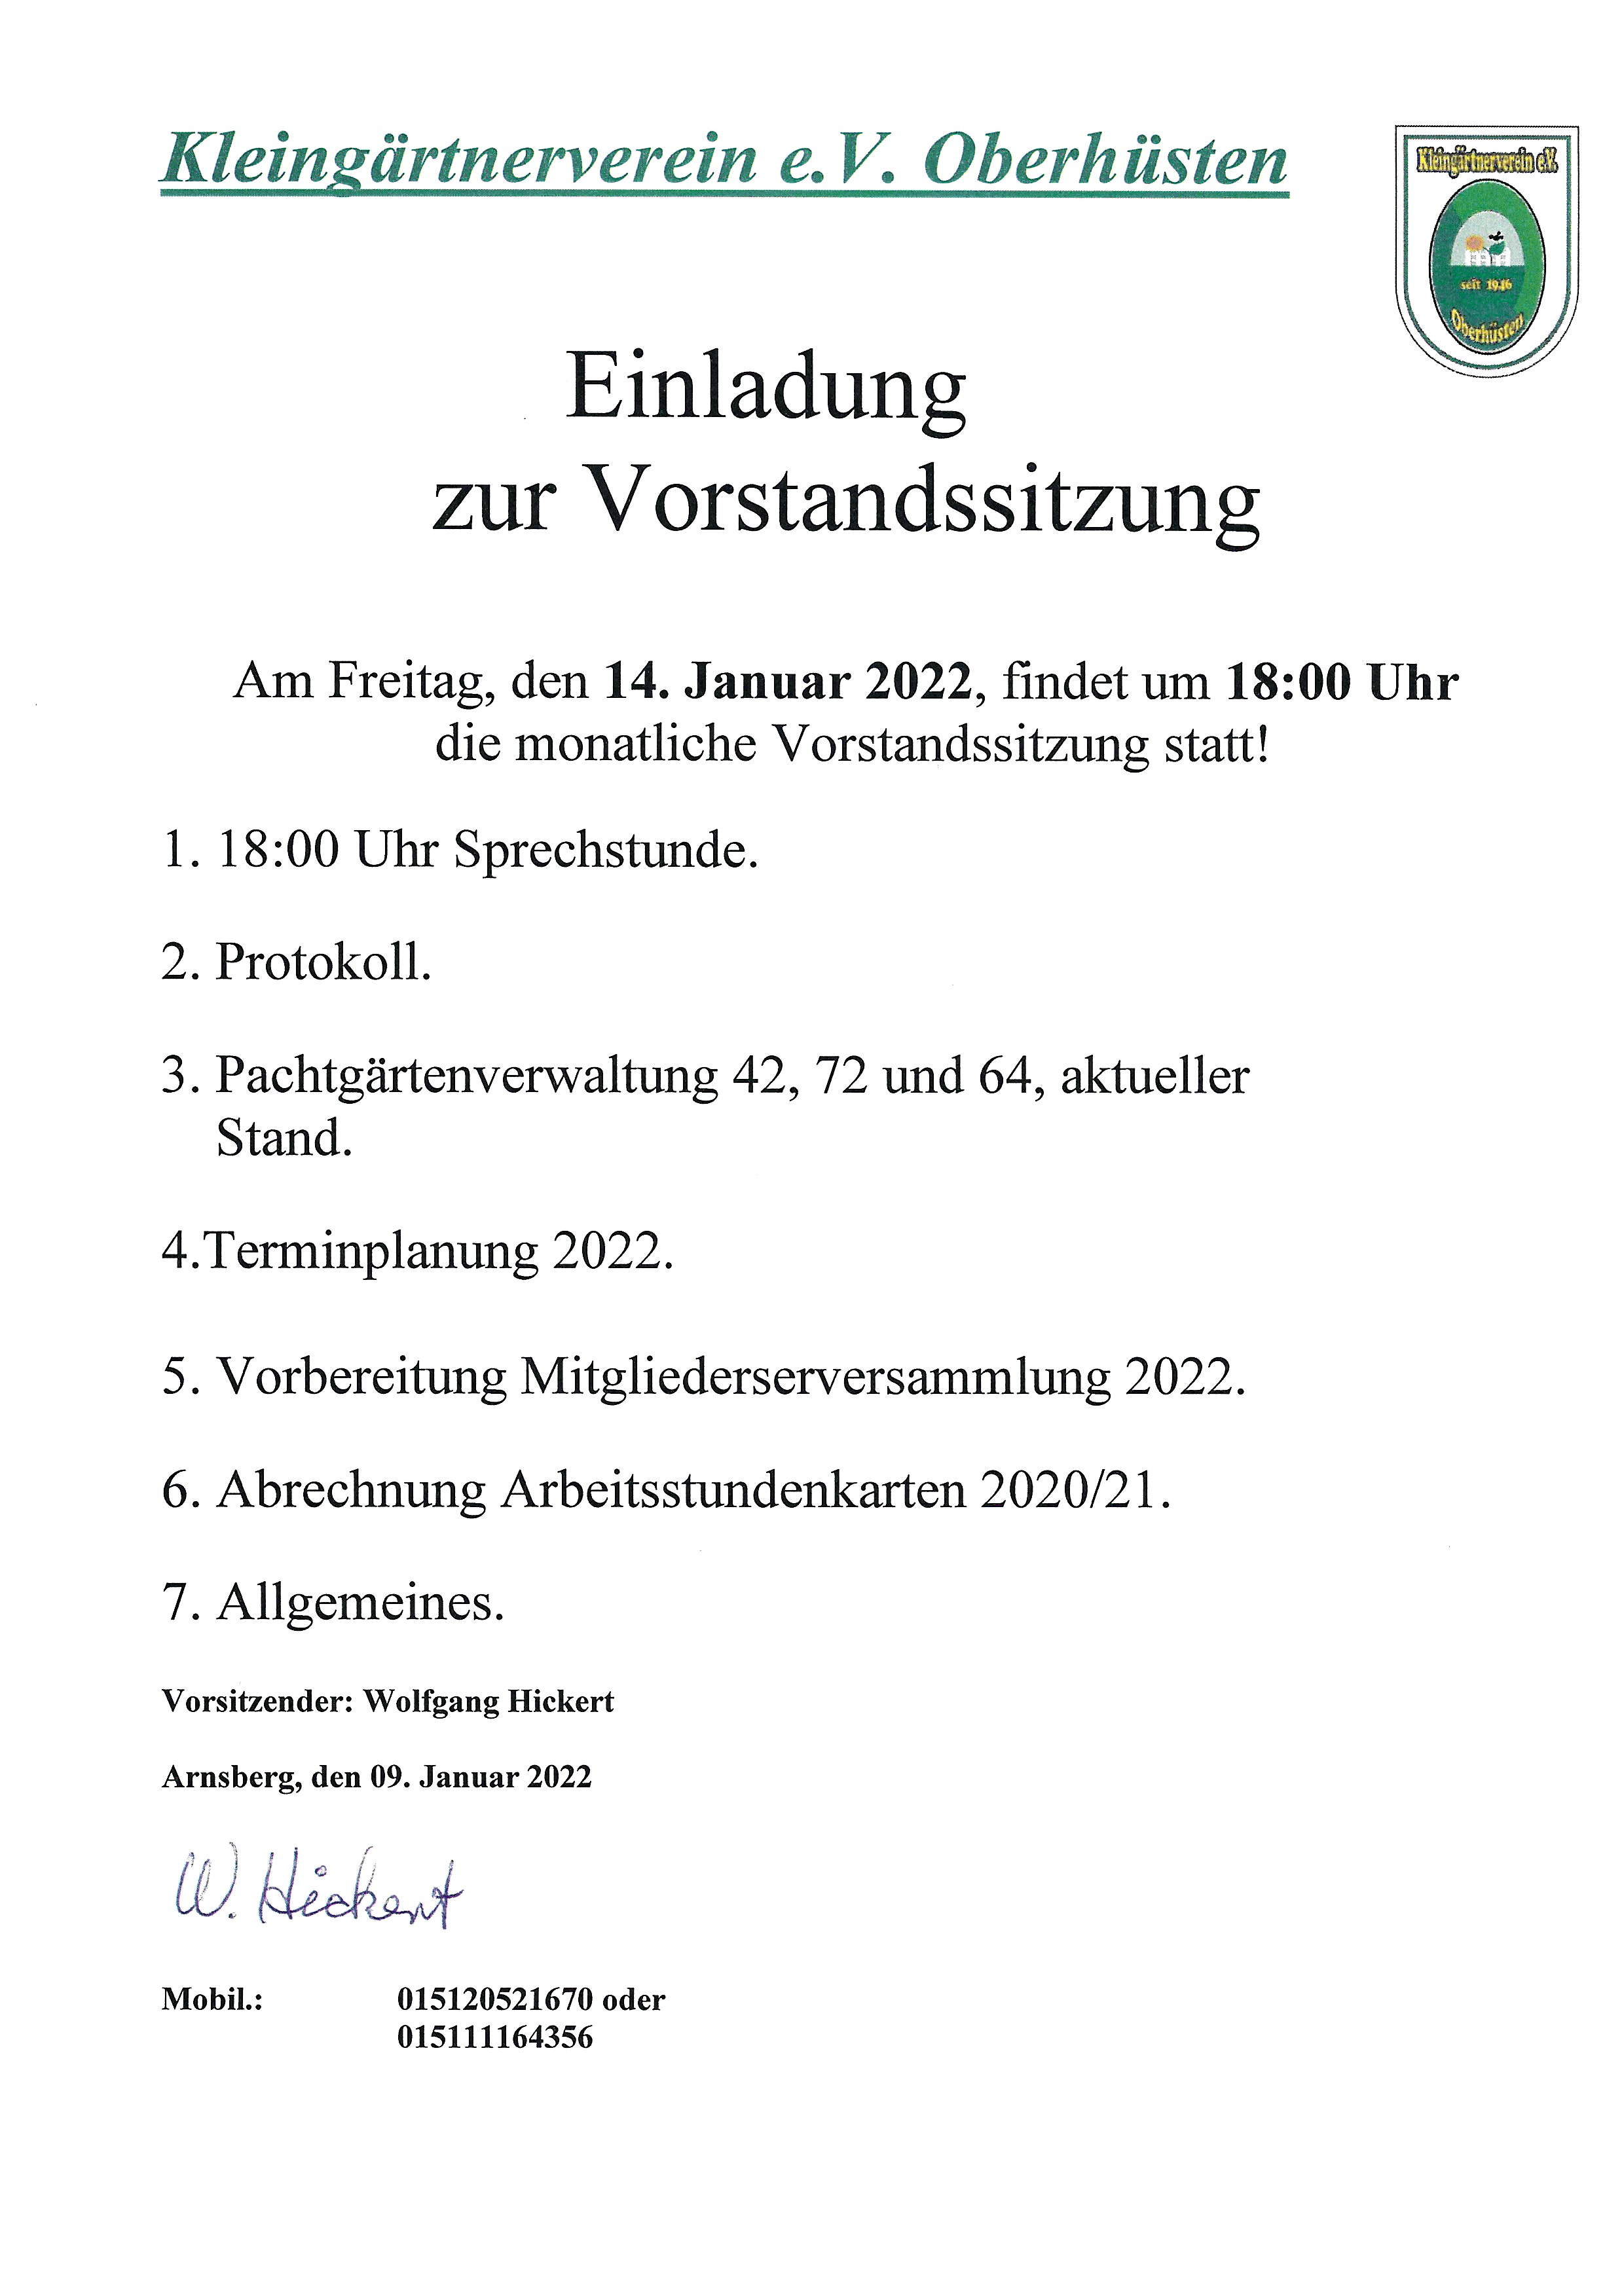 vorstandssitzung-januar-2022.png